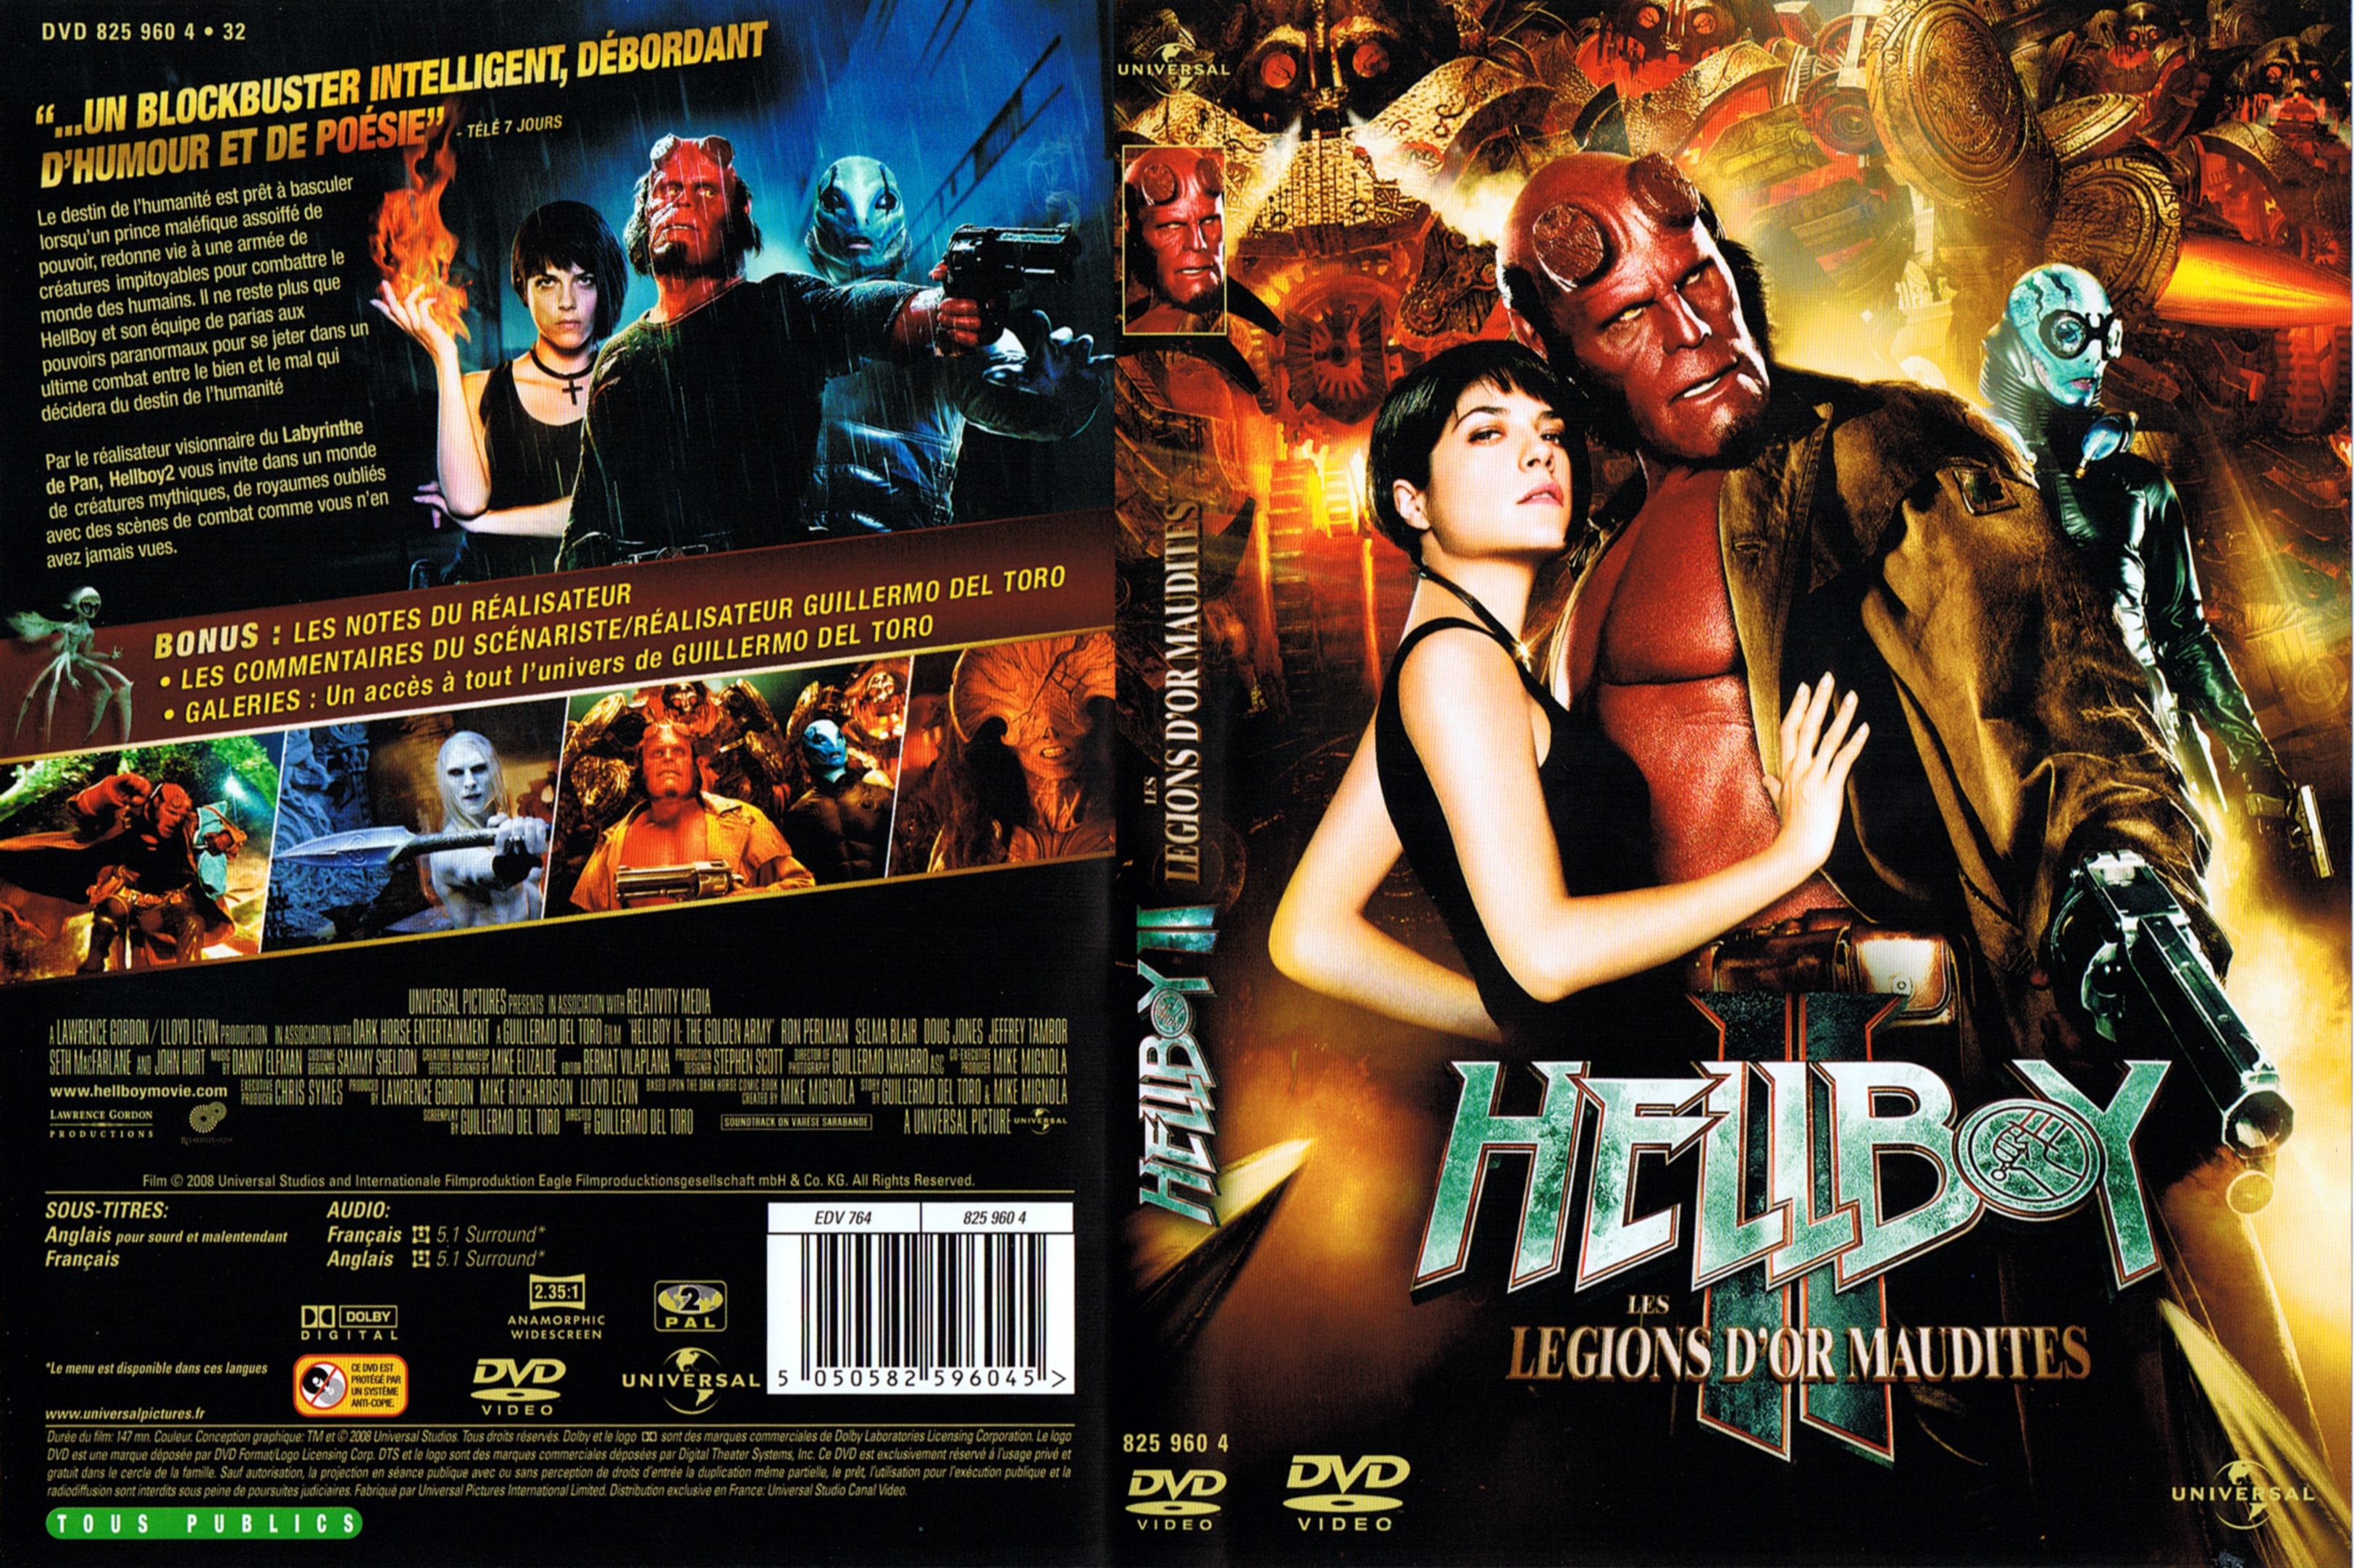 Jaquette DVD Hellboy 2 v2